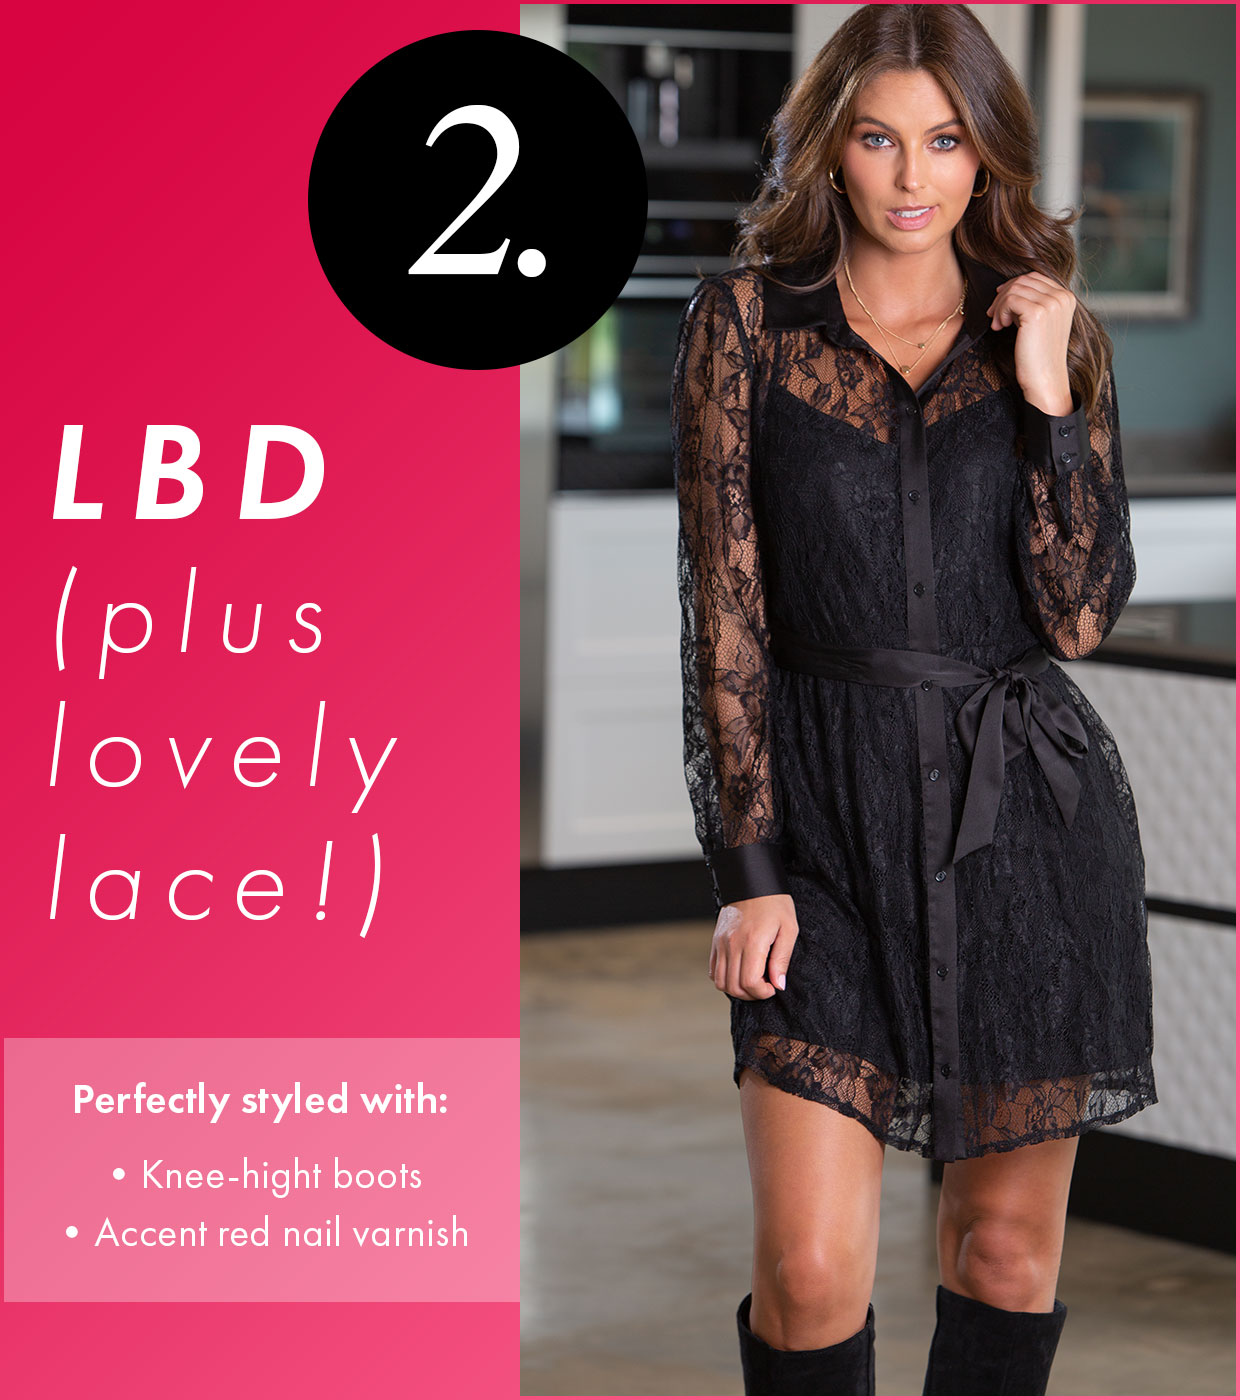 2. LBD (+ lovely lace!)